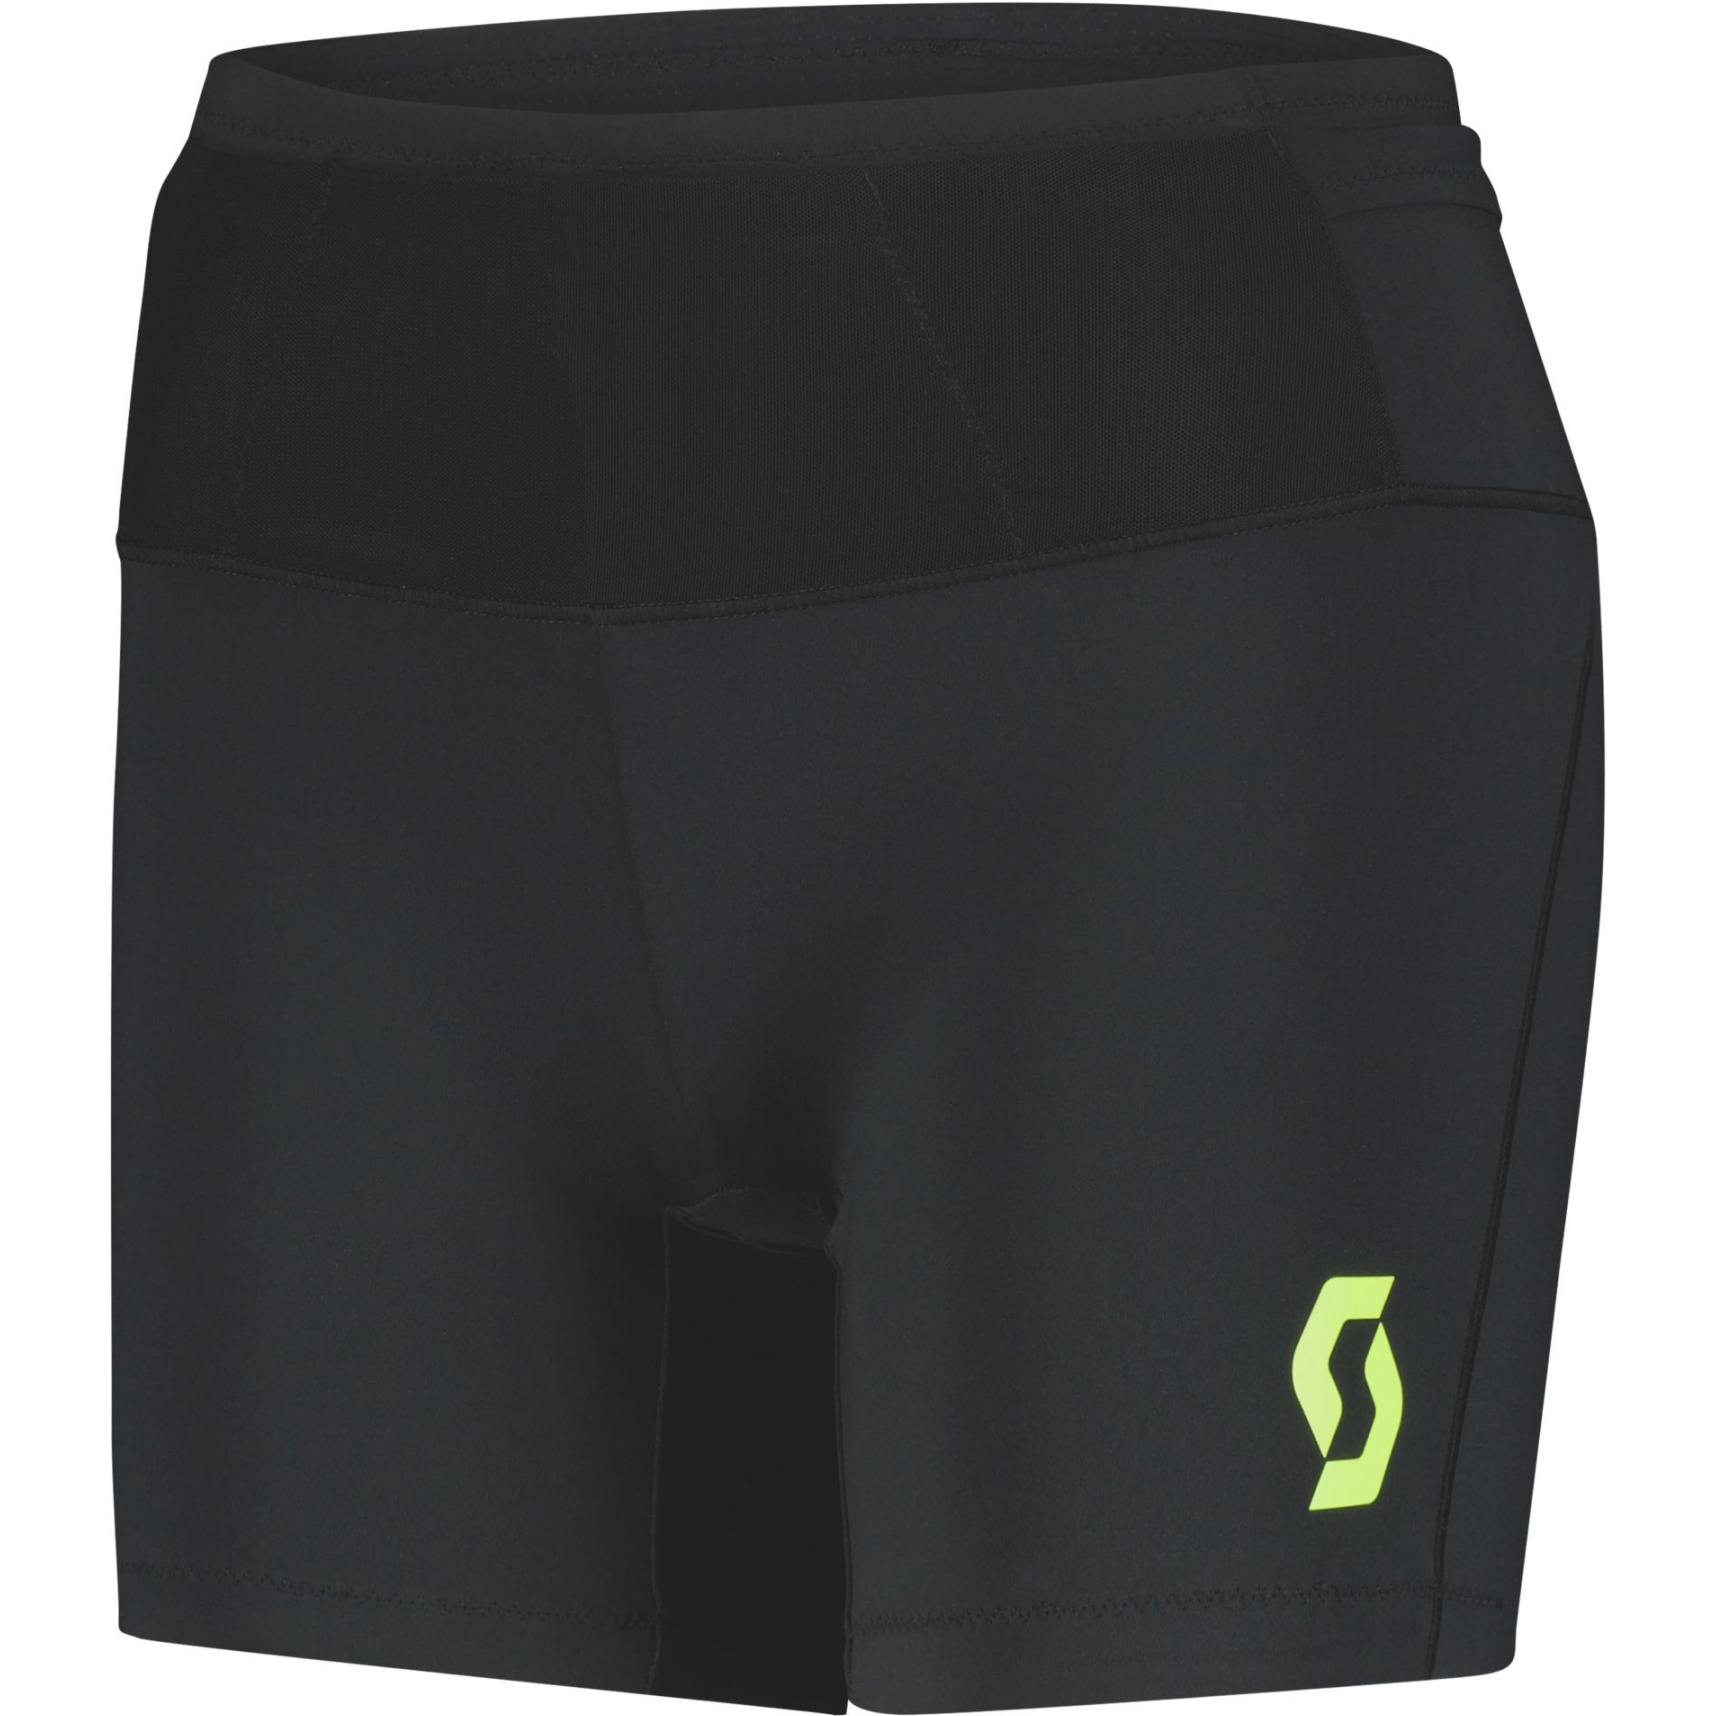 Produktbild von SCOTT RC Run Tight Shorts Damen - schwarz/gelb